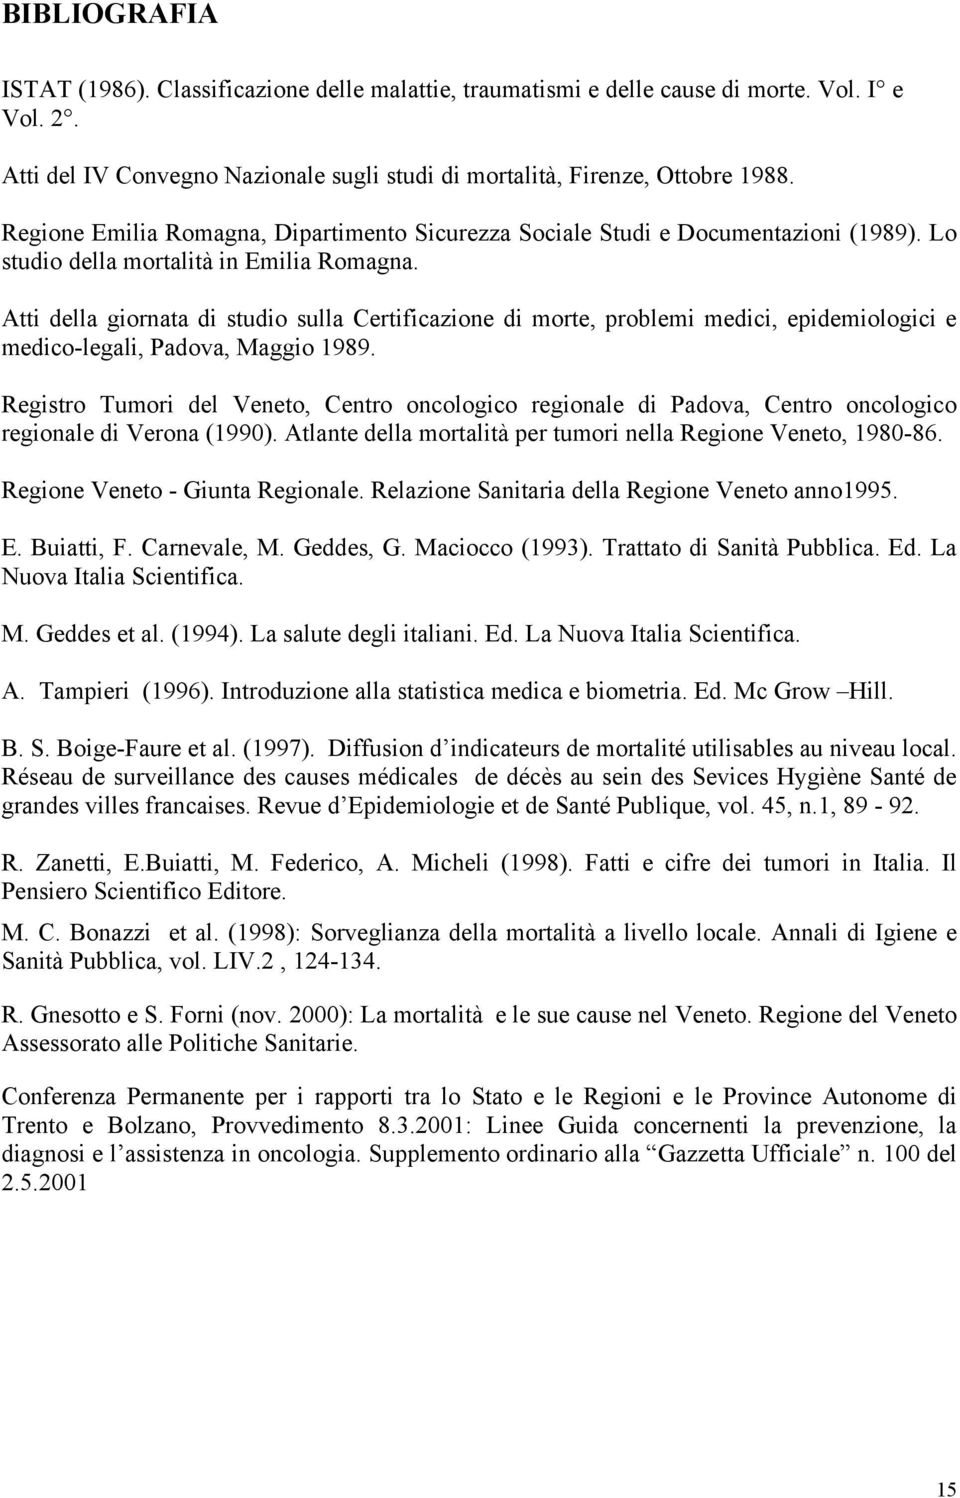 Atti della giornata di studio sulla Certificazione di morte, problemi medici, epidemiologici e medico-legali, Padova, Maggio 1989.